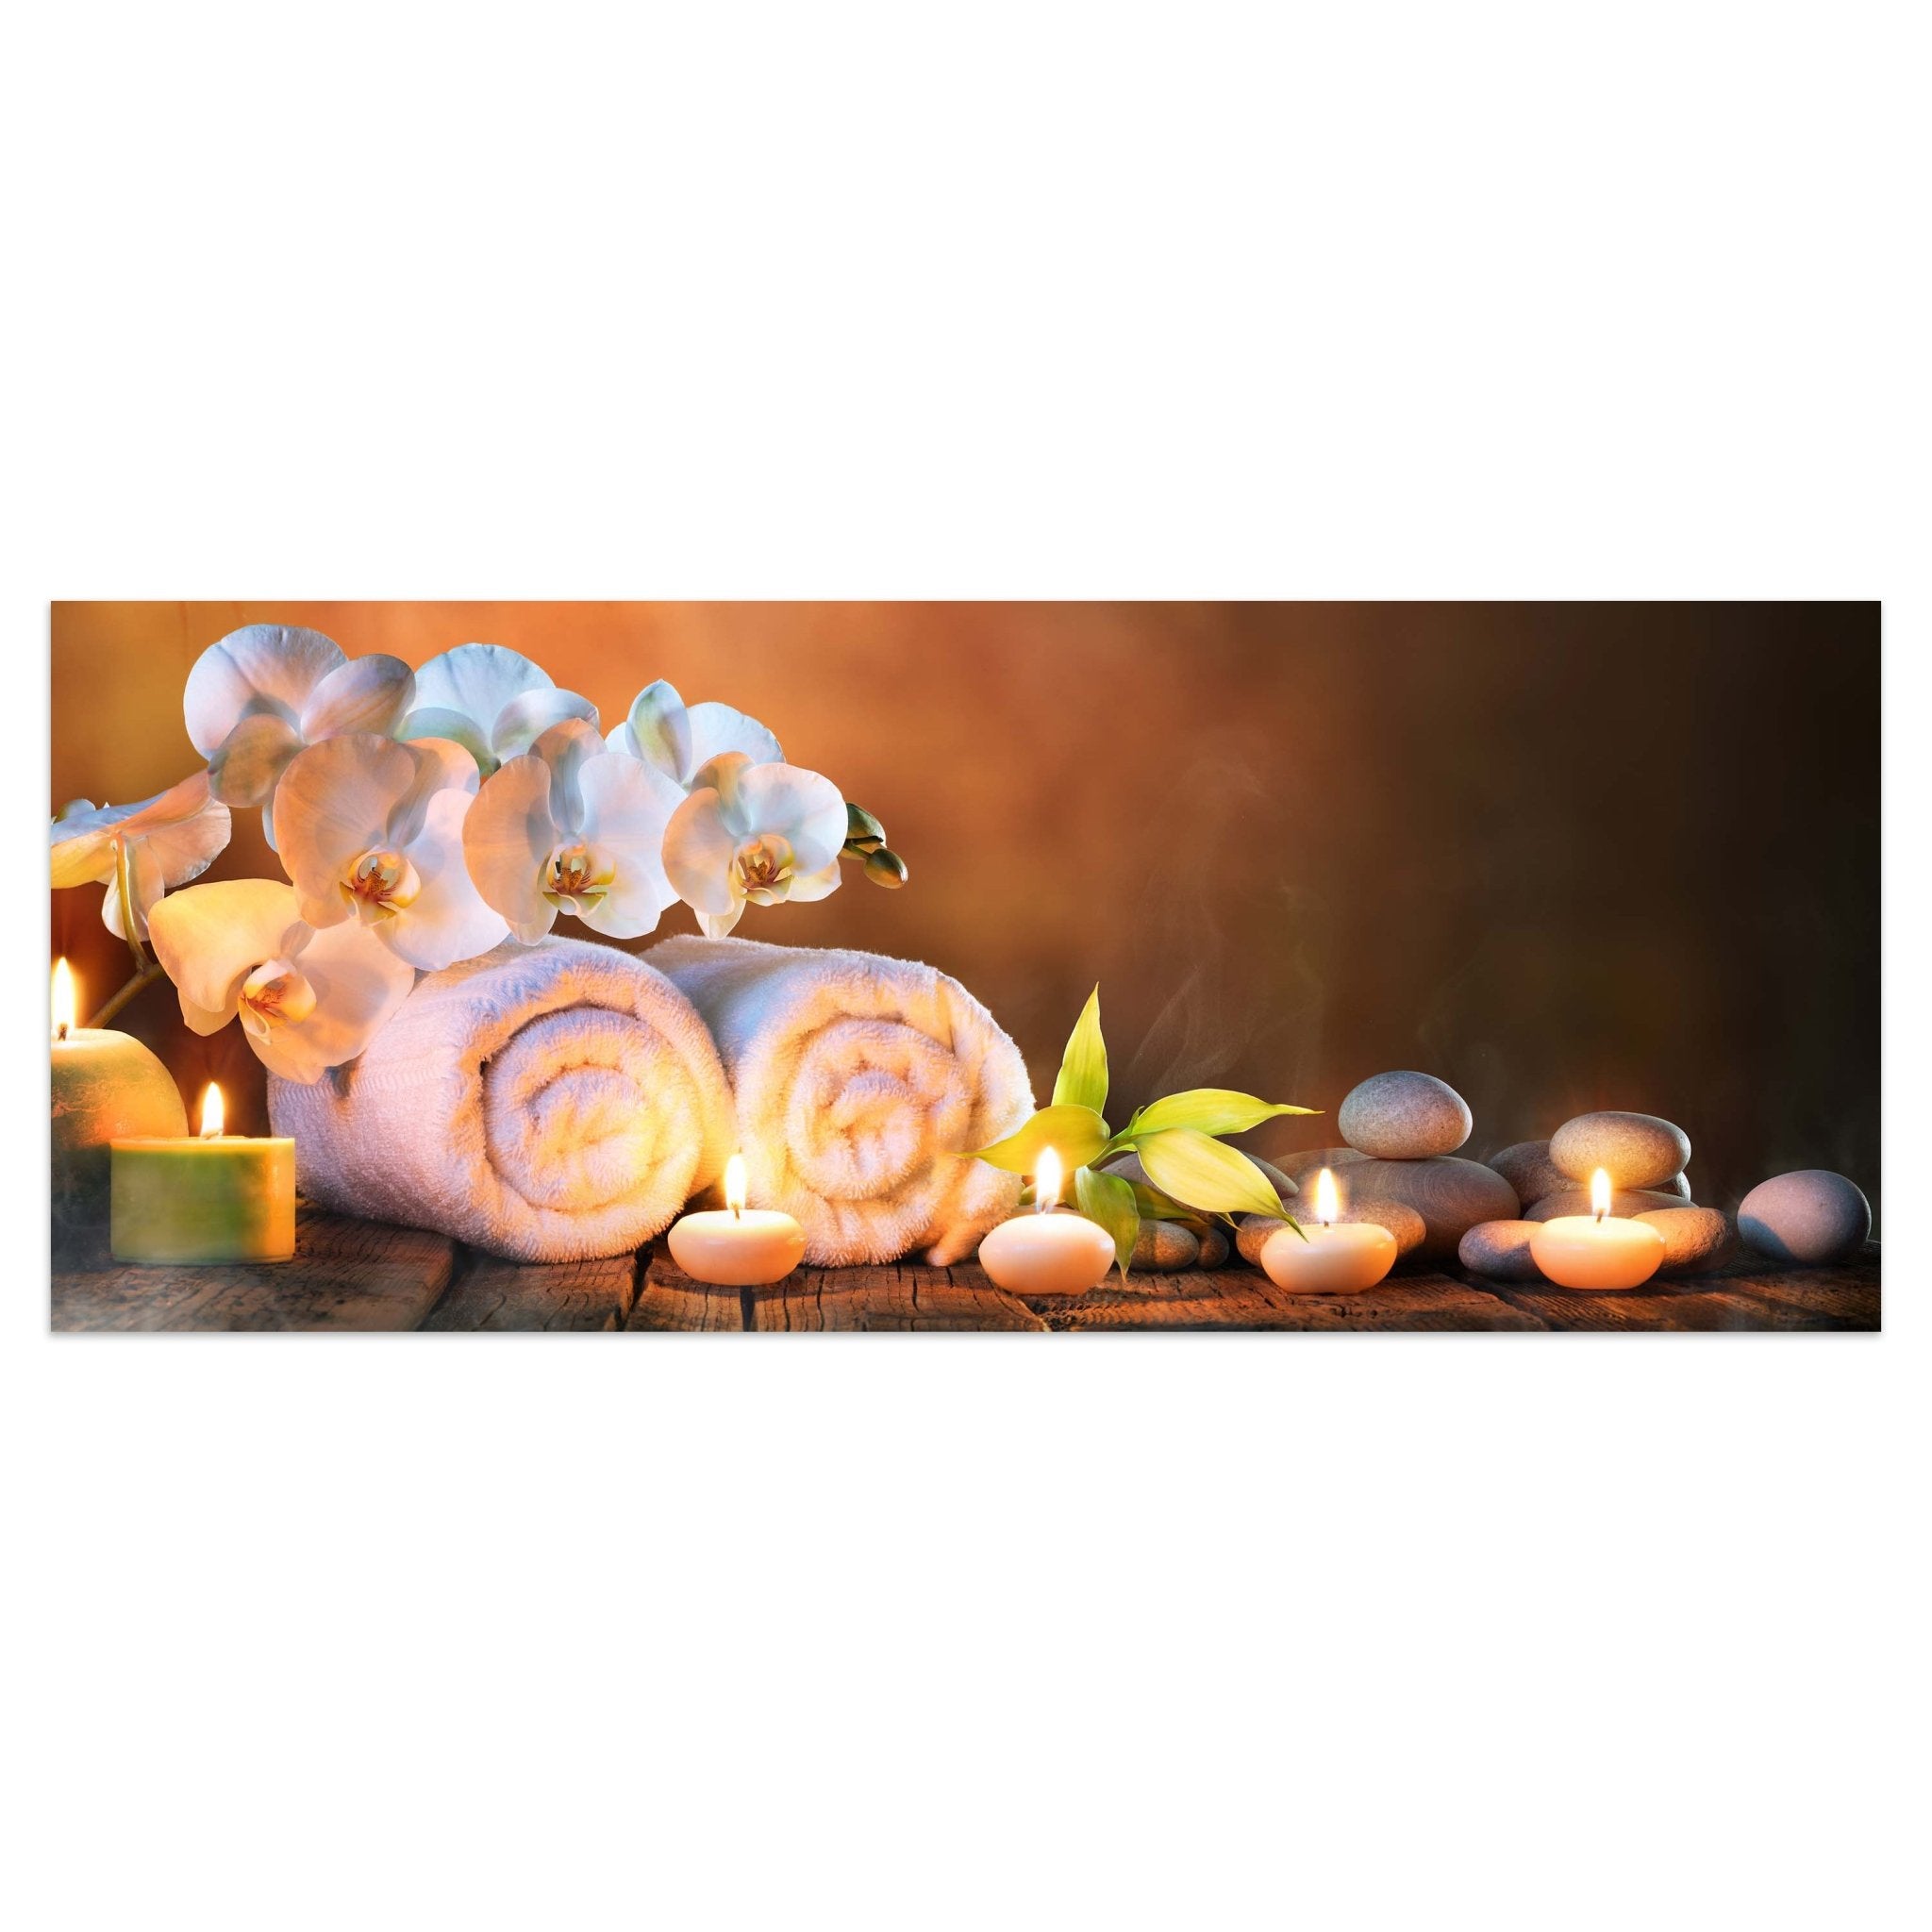 Leinwandbild Steine, Kerzen, Handtuch, Wellness, Spa M1101 kaufen - Bild 1